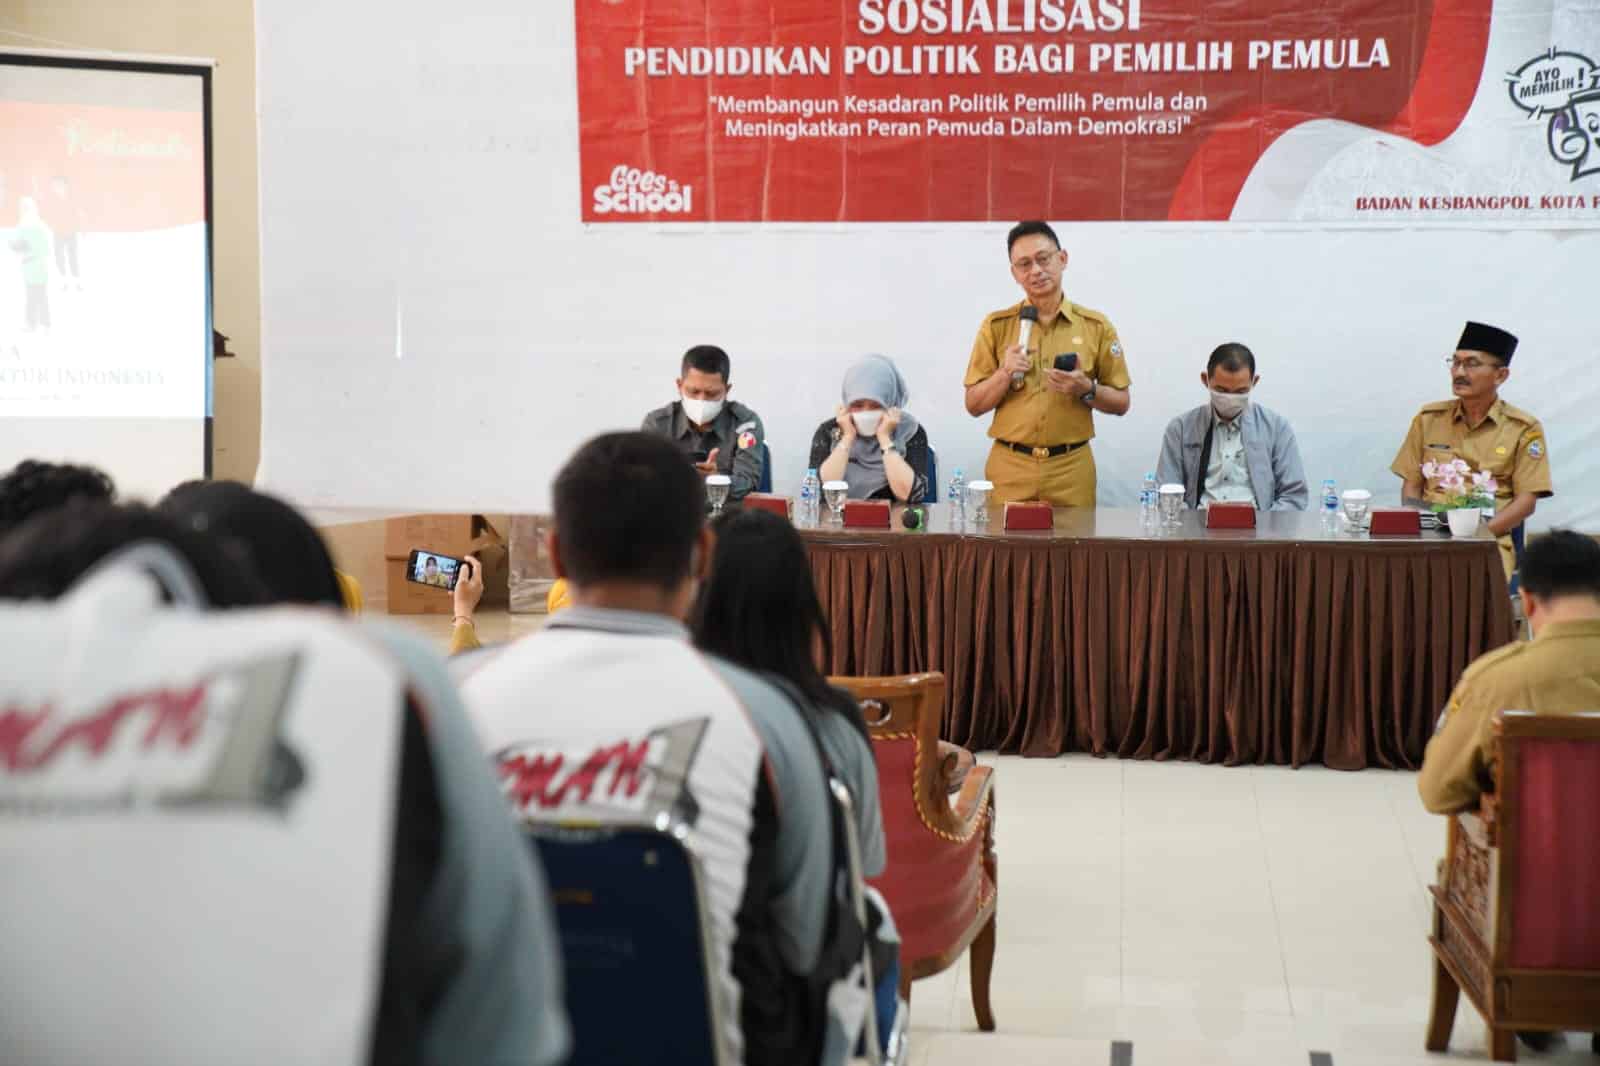 Wali Kota Pontianak, Edi Rusdi Kamtono membuka kegiatan pendidikan politik bagi pemilih pemula di SMAN 1 Pontianak. (Foto: Kominfo/Prokopim For KalbarOnline.com)